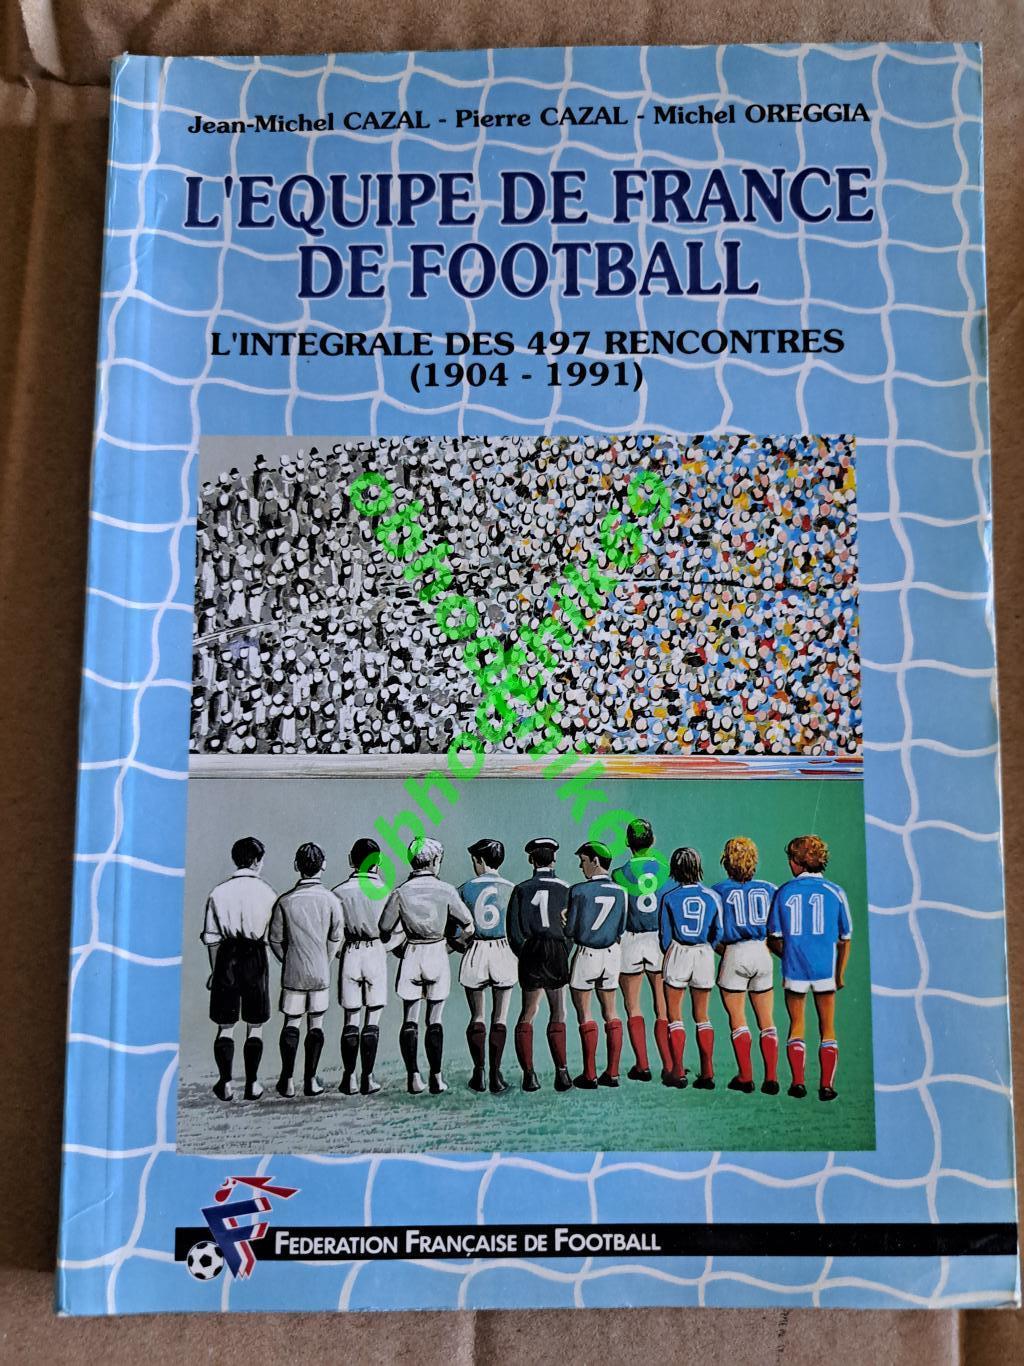 Справочник футбол Франция игры 1904 -1991 Casal L'Equipe de France de football